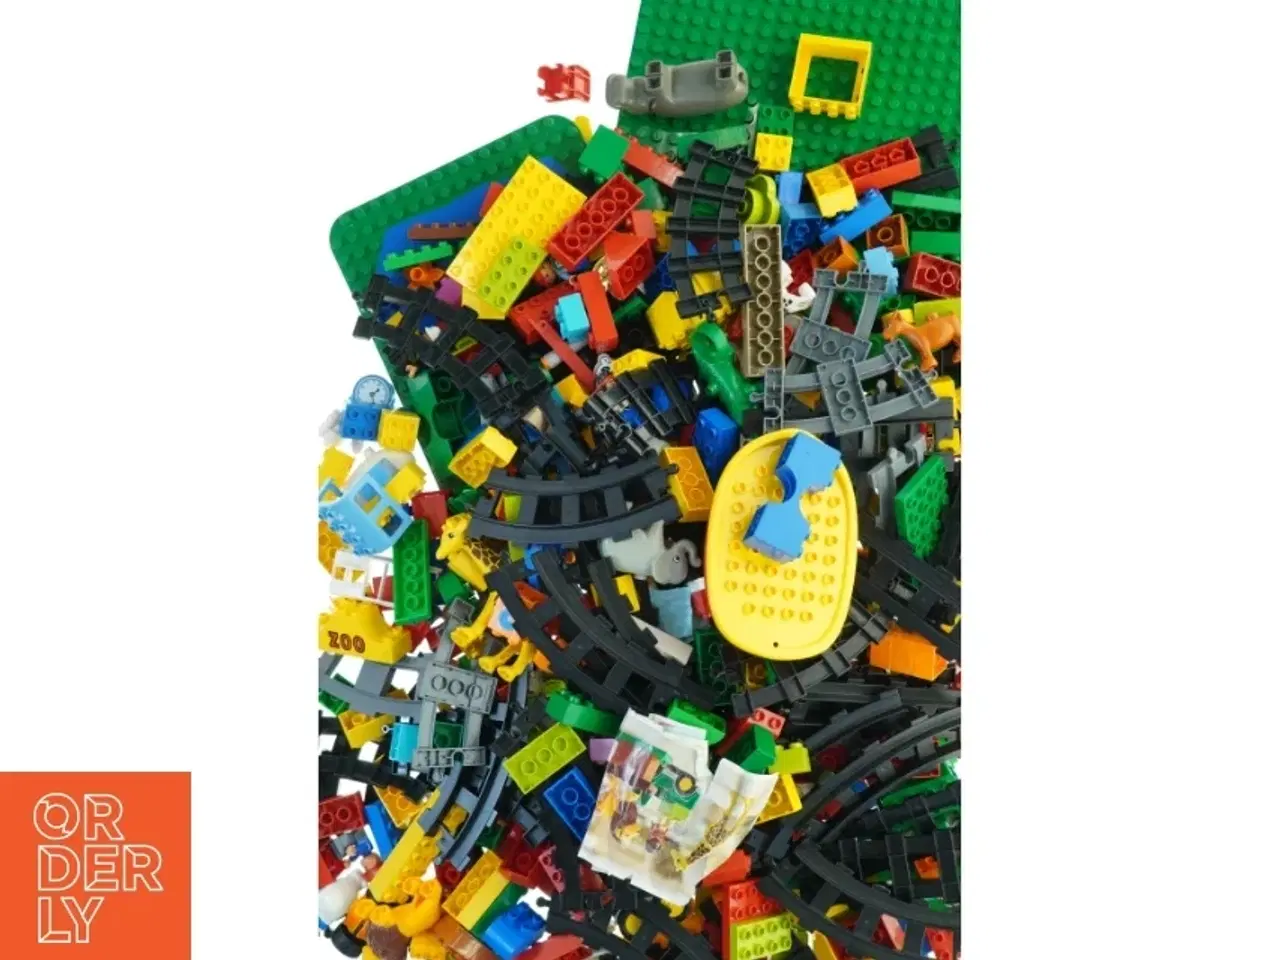 Billede 3 - Blandede LEGO klodser fra Lego (str. 58 x 40 cm)